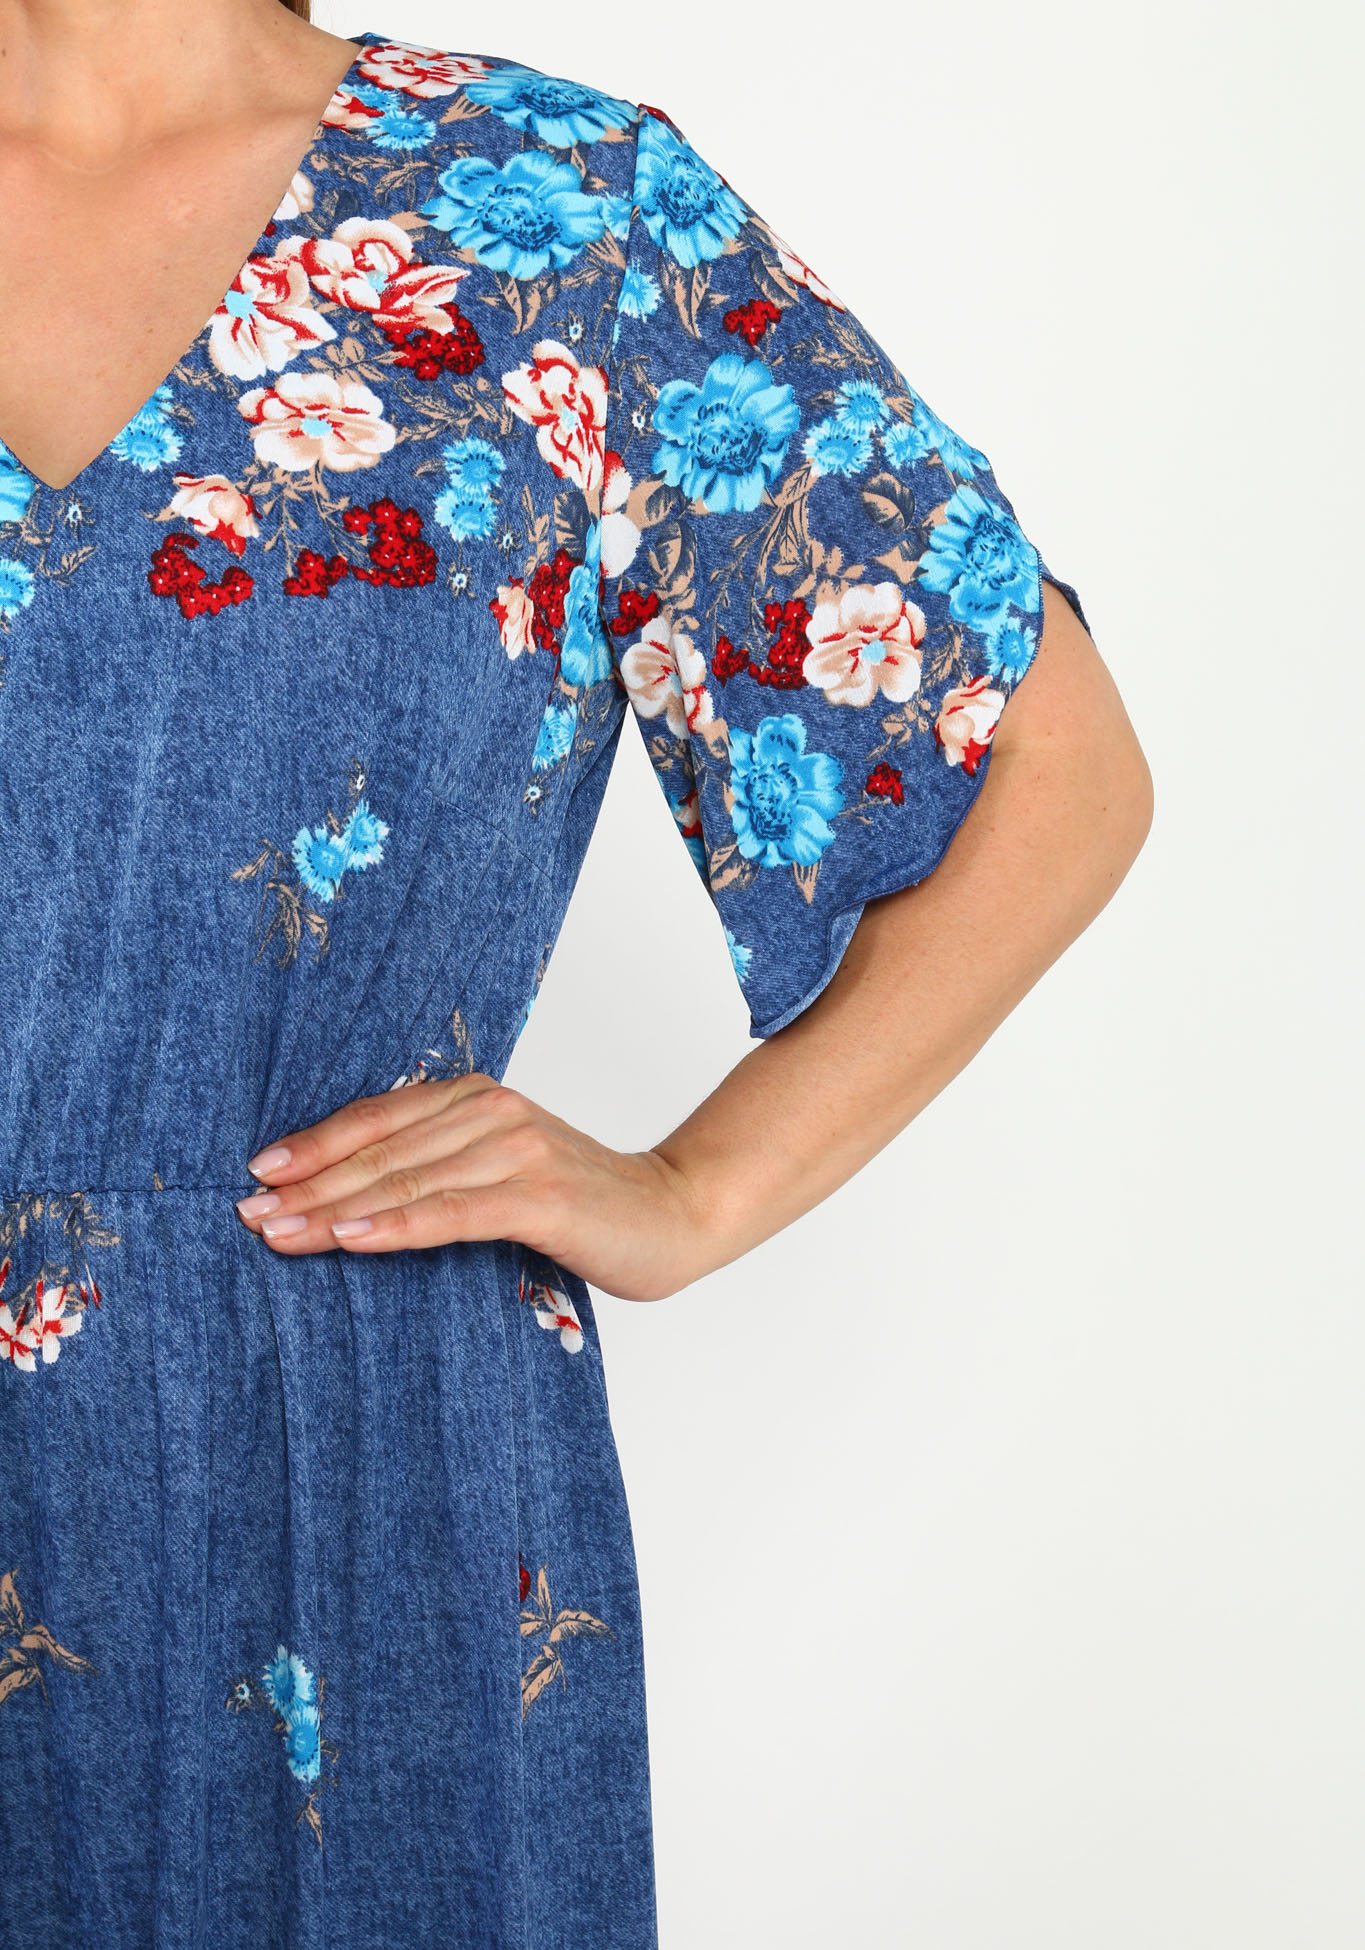 Платье с резинкой на талии и купонным принтом Bianka Modeno, размер 48, цвет голубые цветы - фото 5